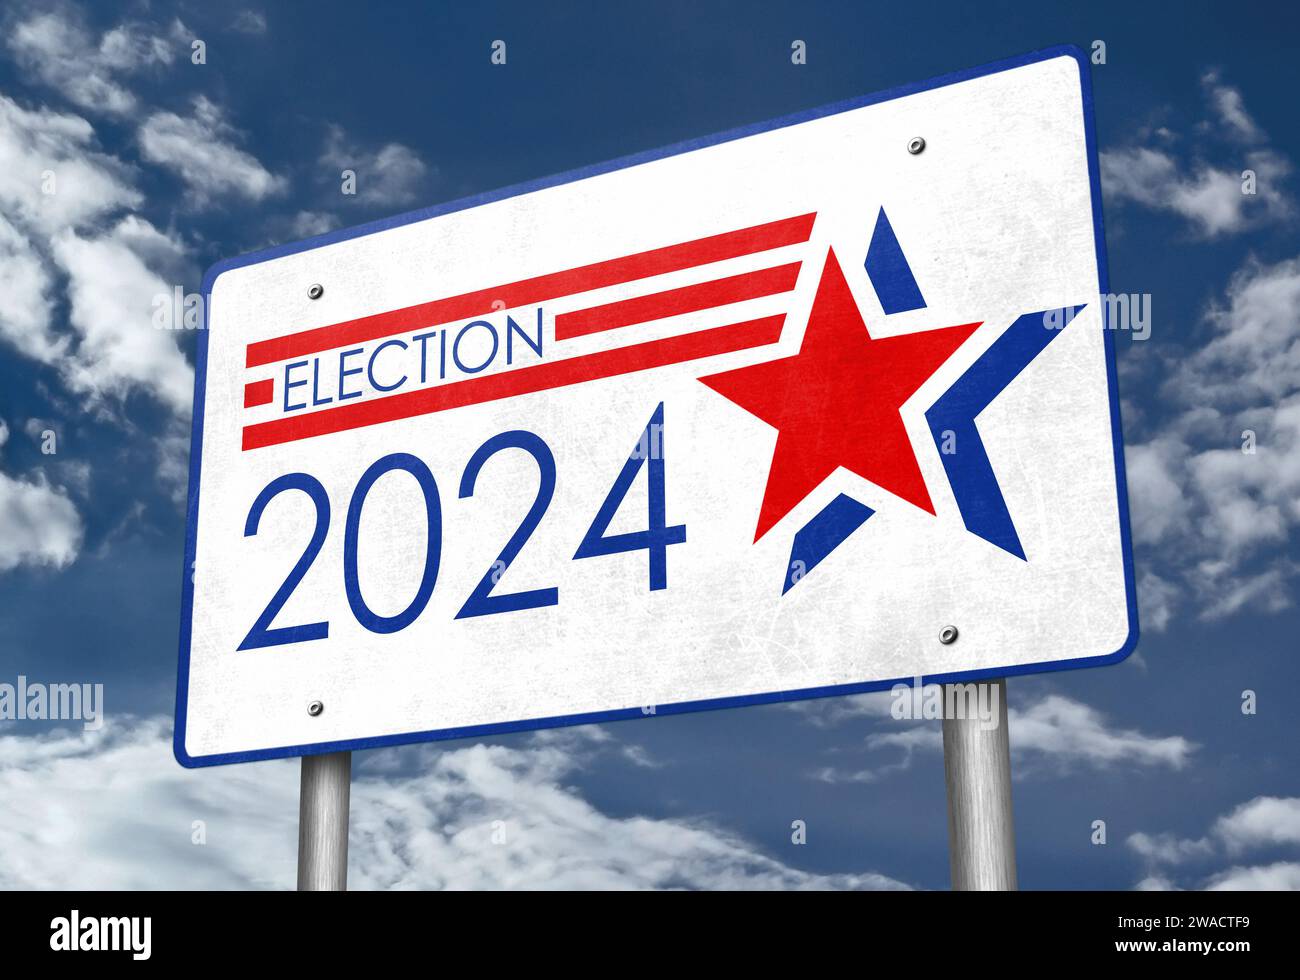 US Election 2024 - panneau routier Banque D'Images